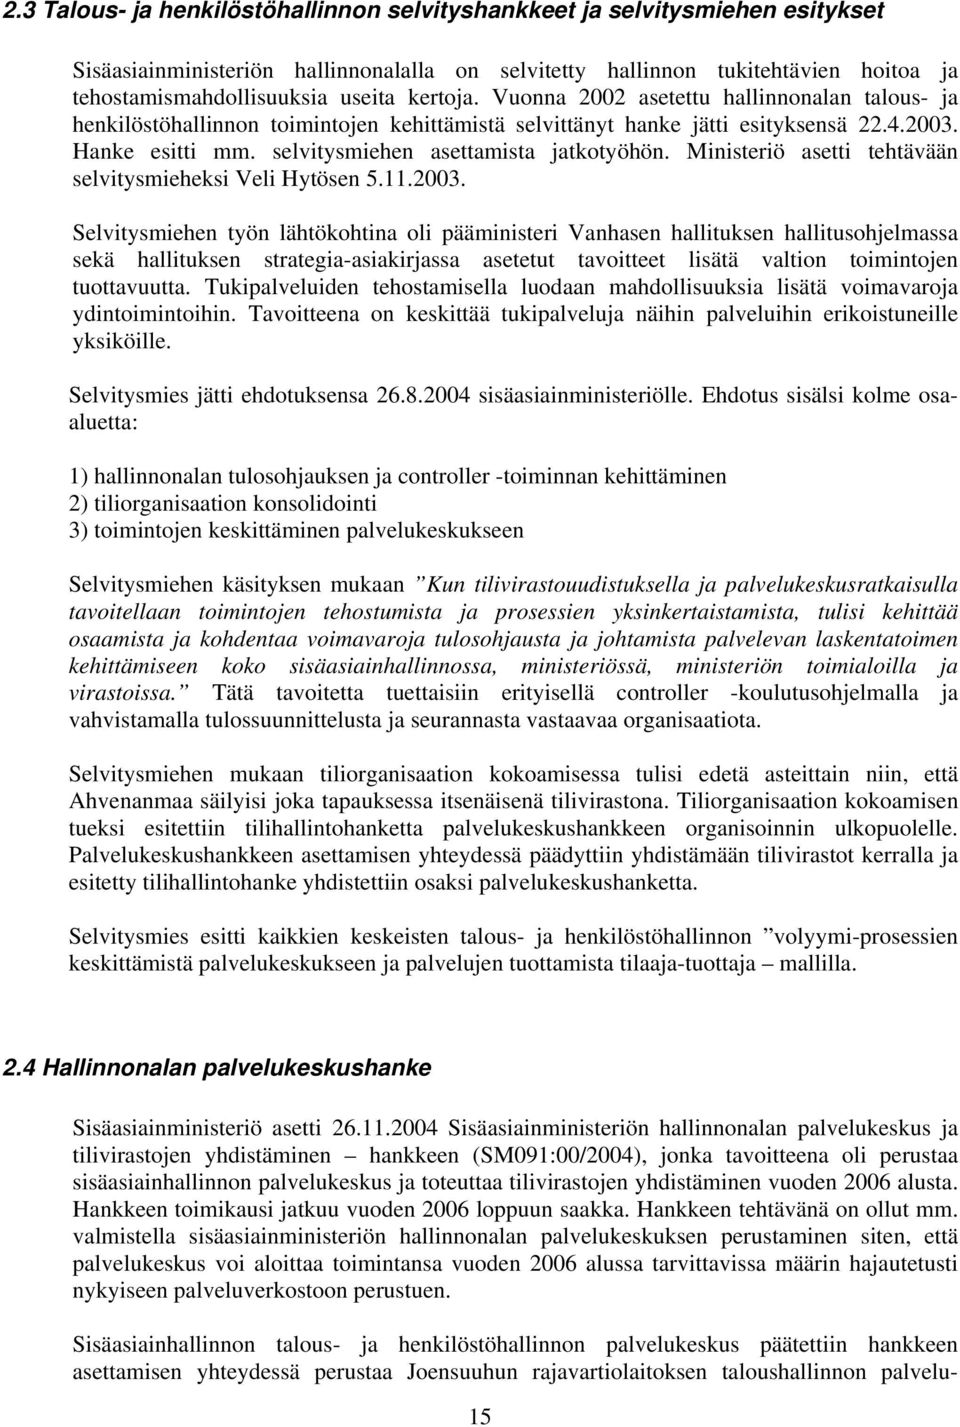 selvitysmiehen asettamista jatkotyöhön. Ministeriö asetti tehtävään selvitysmieheksi Veli Hytösen 5.11.2003.